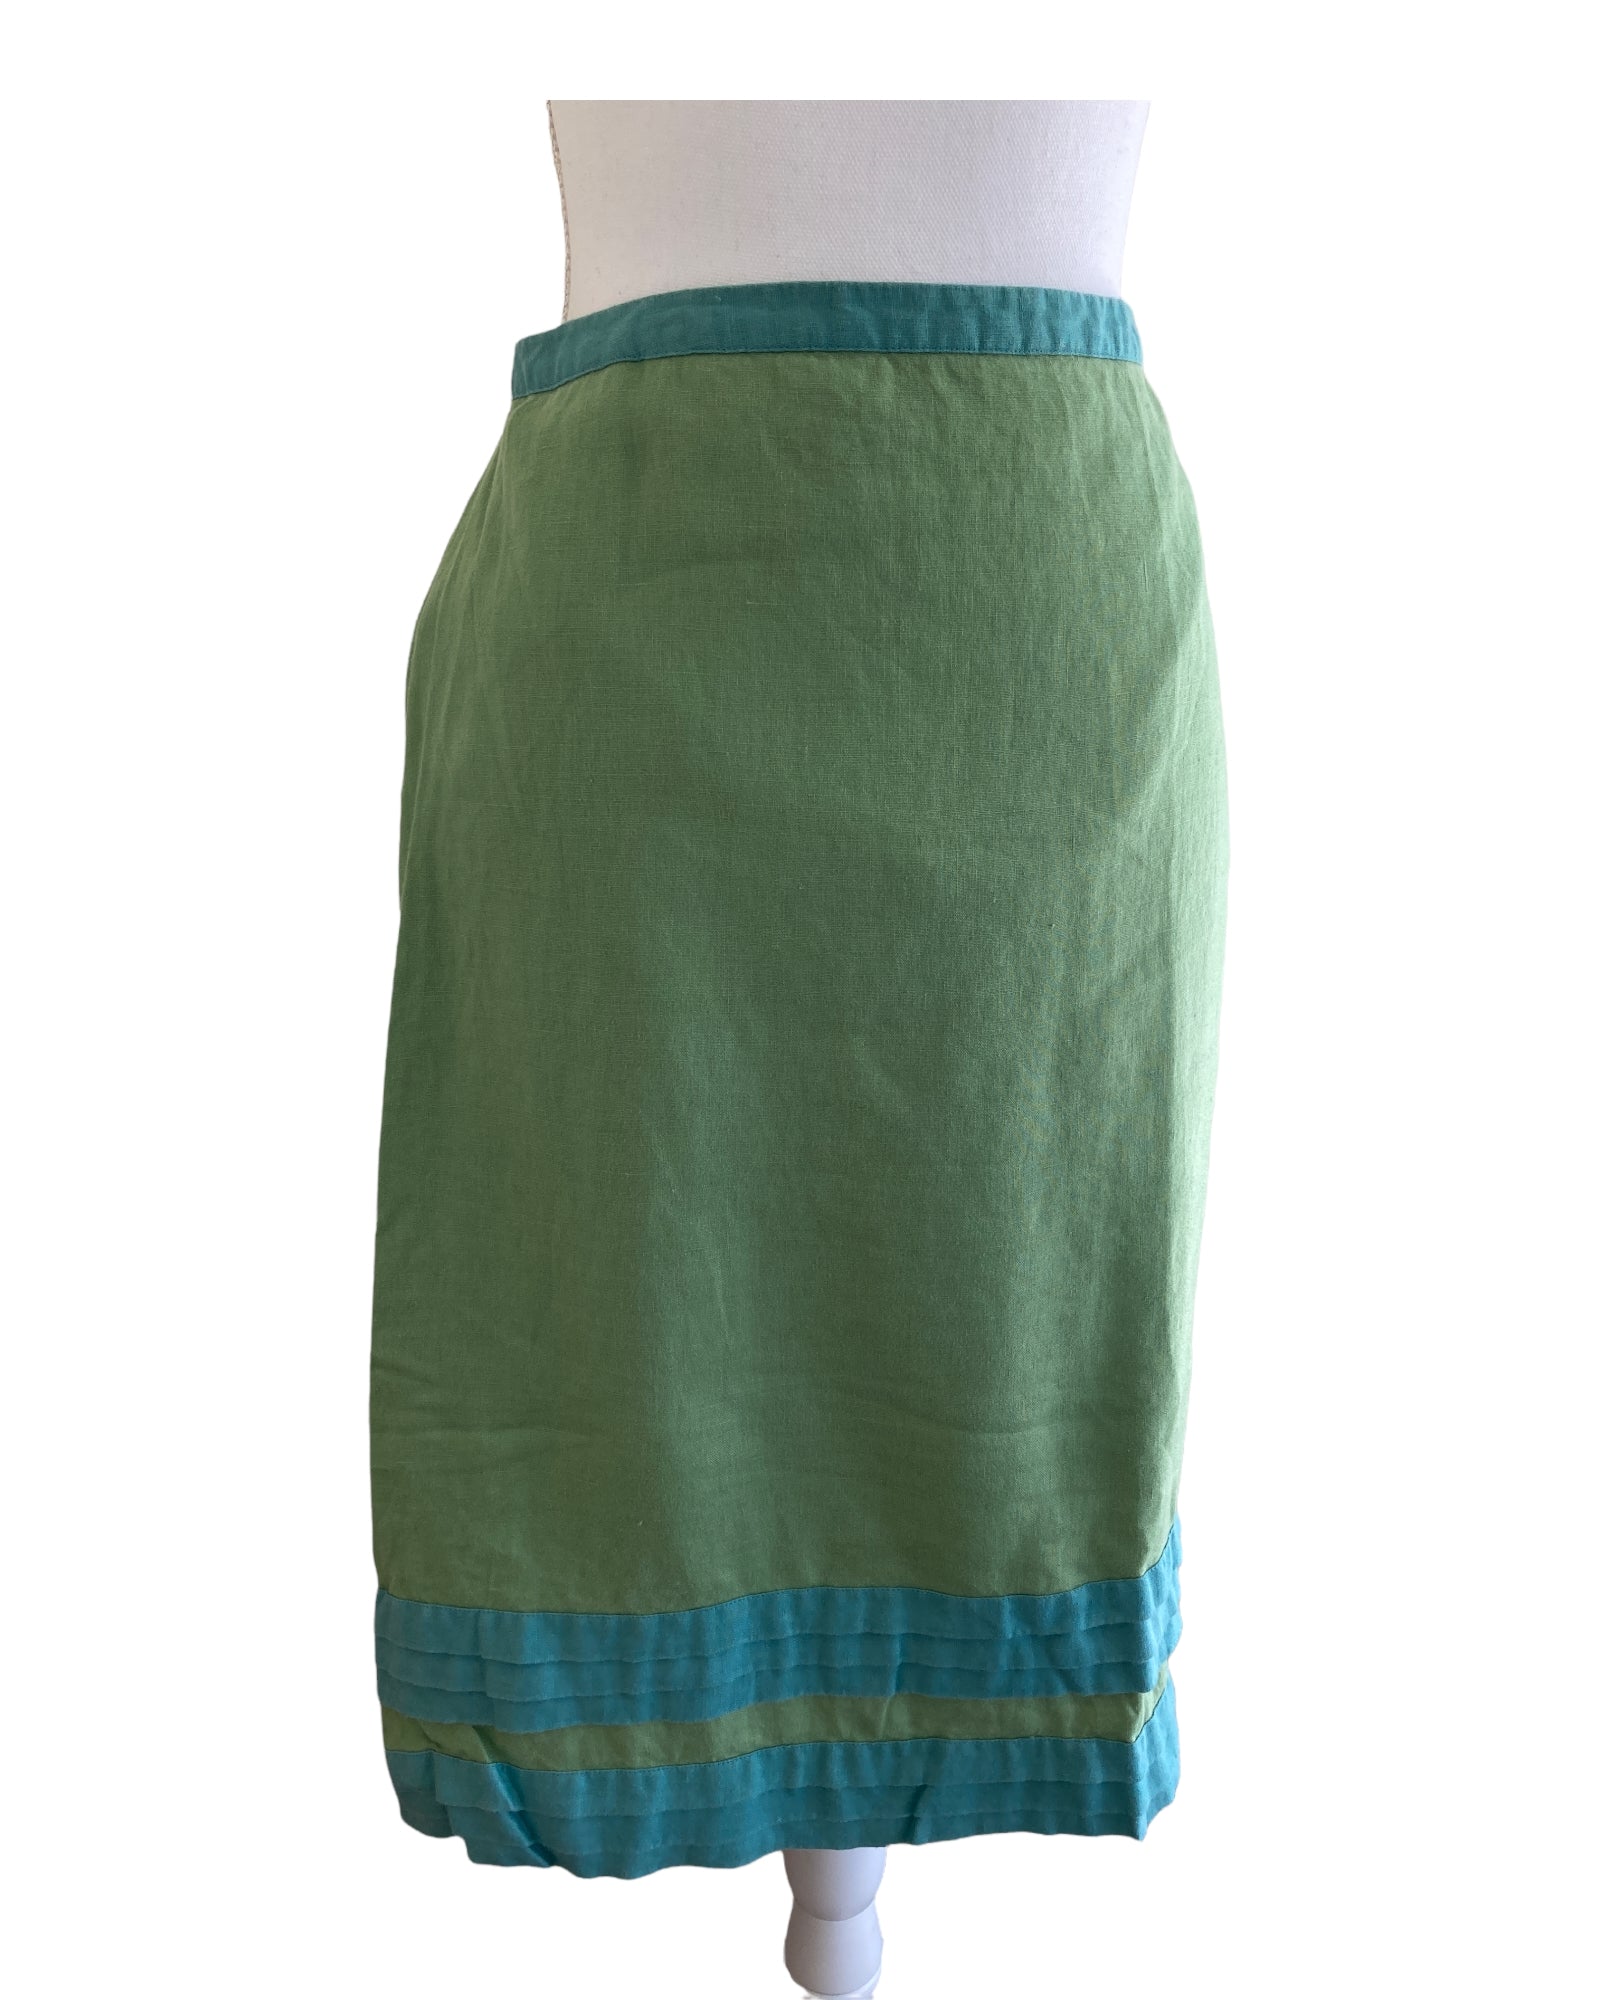 Boden Green Linen Skirt, 16